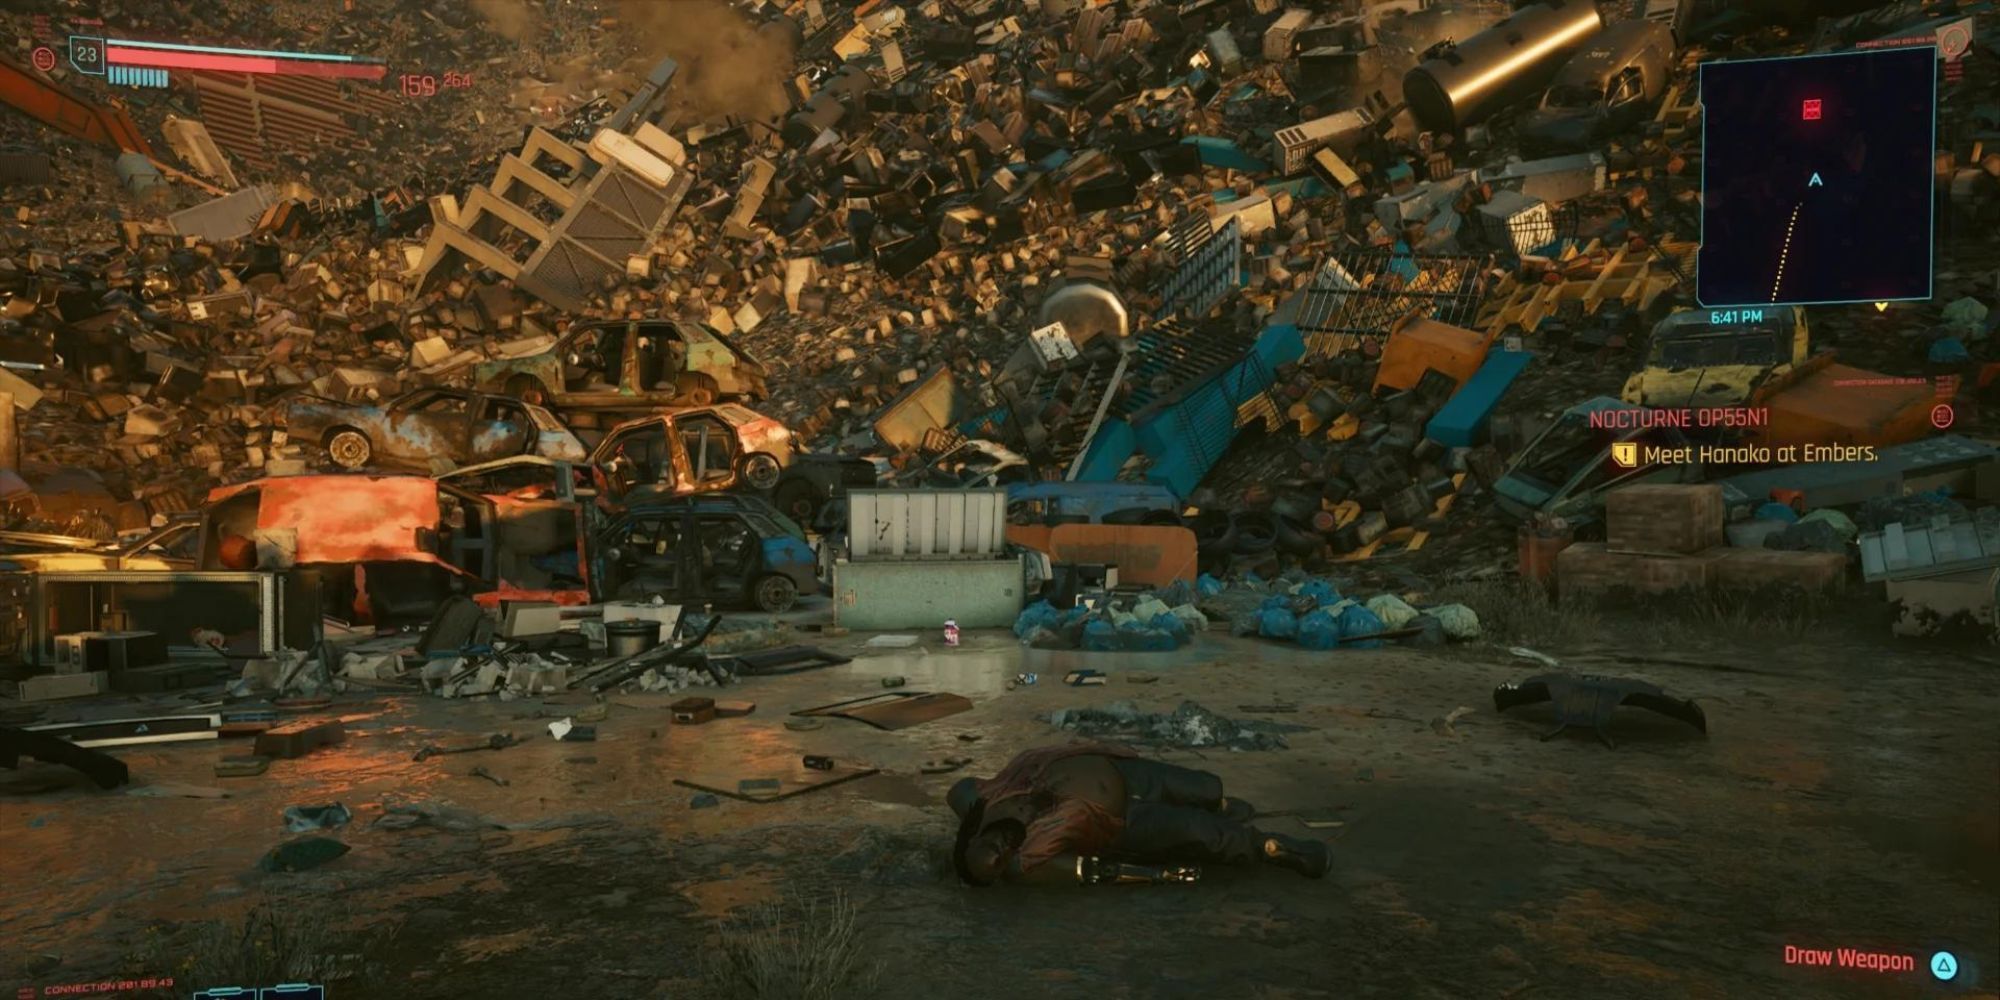 Декс ДеШон лежит мертвым перед холодильником, к которому игроки должны отправиться в квесте Cyberpunk 2077 под названием Kold Mirage.